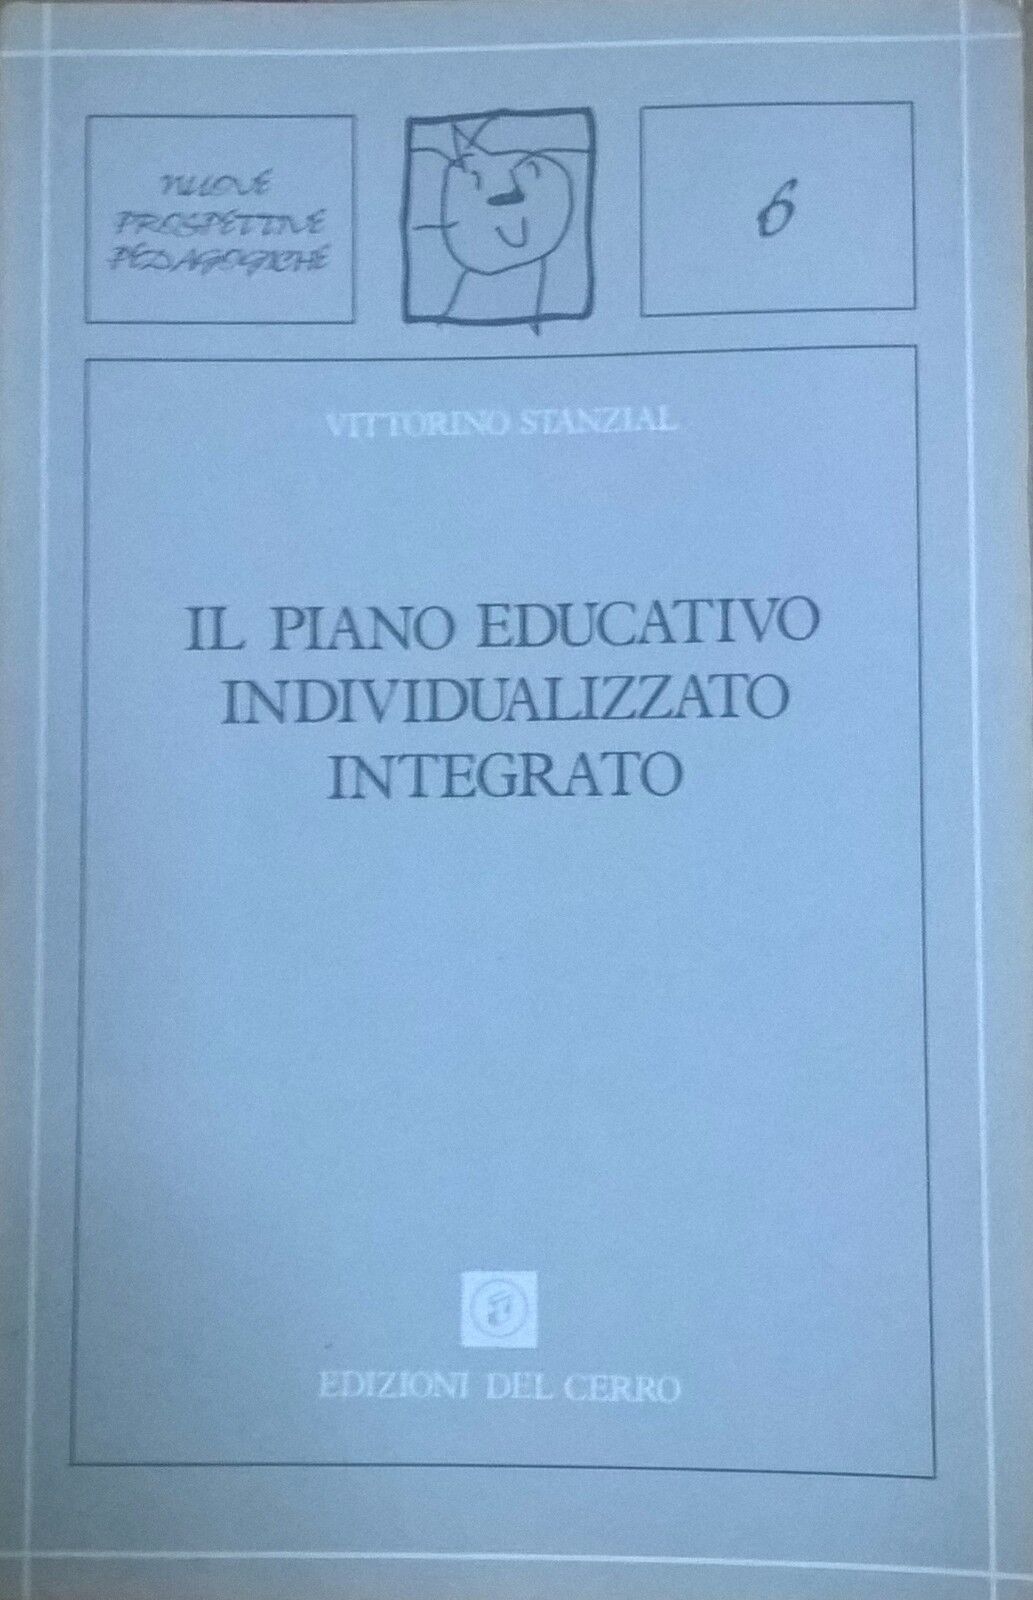 Il piano educativo individualizzato integrato - Stanzial (1990, del Cerro) Ca